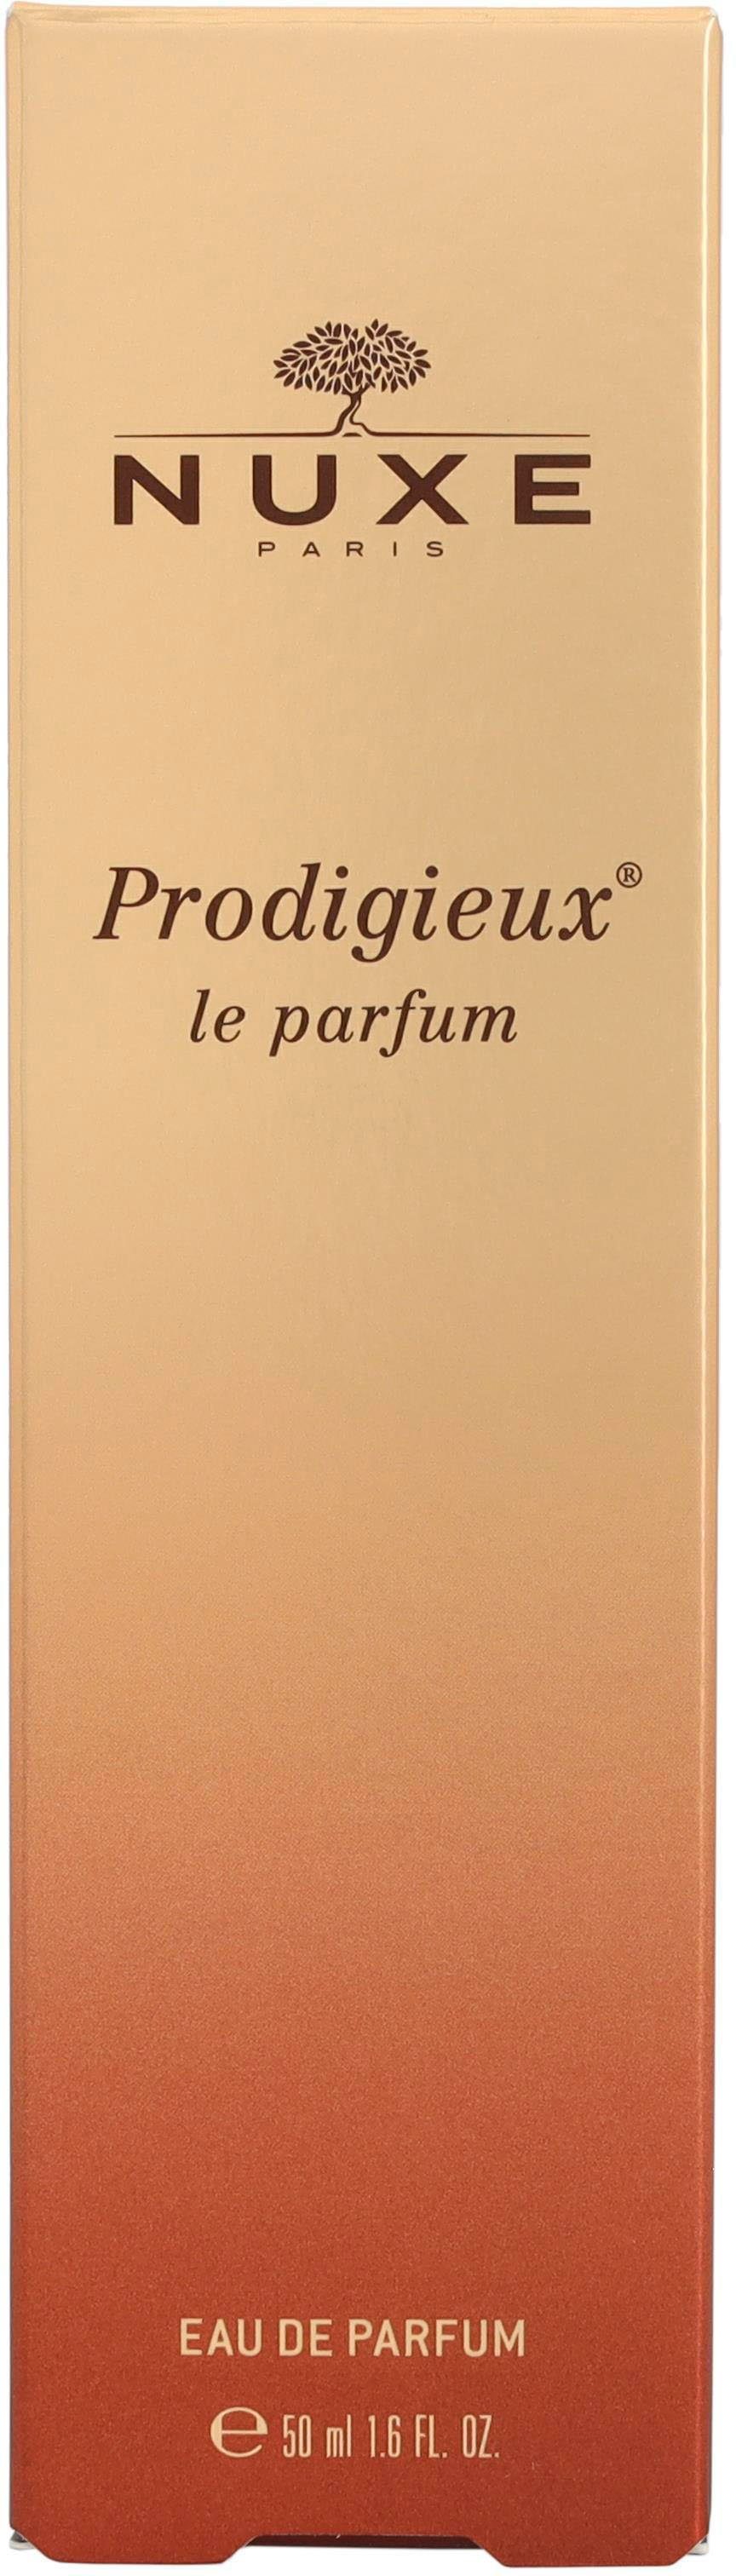 Eau Parfum Le Prodigieux Nuxe de Parfum